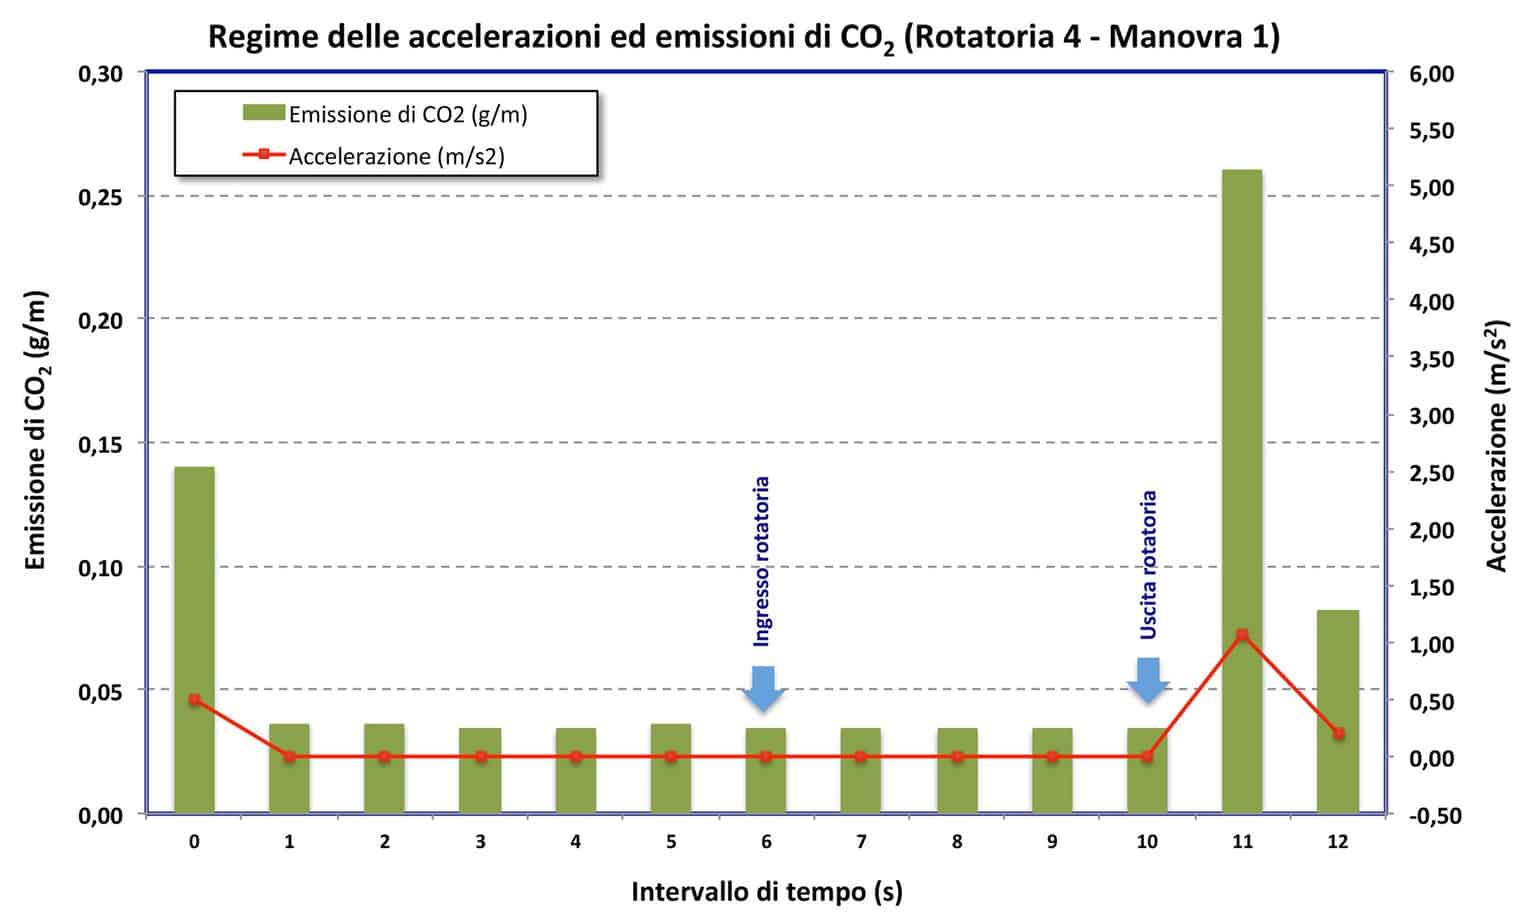 Le emissioni di CO2 nella rotatoria 4 - manovra 1